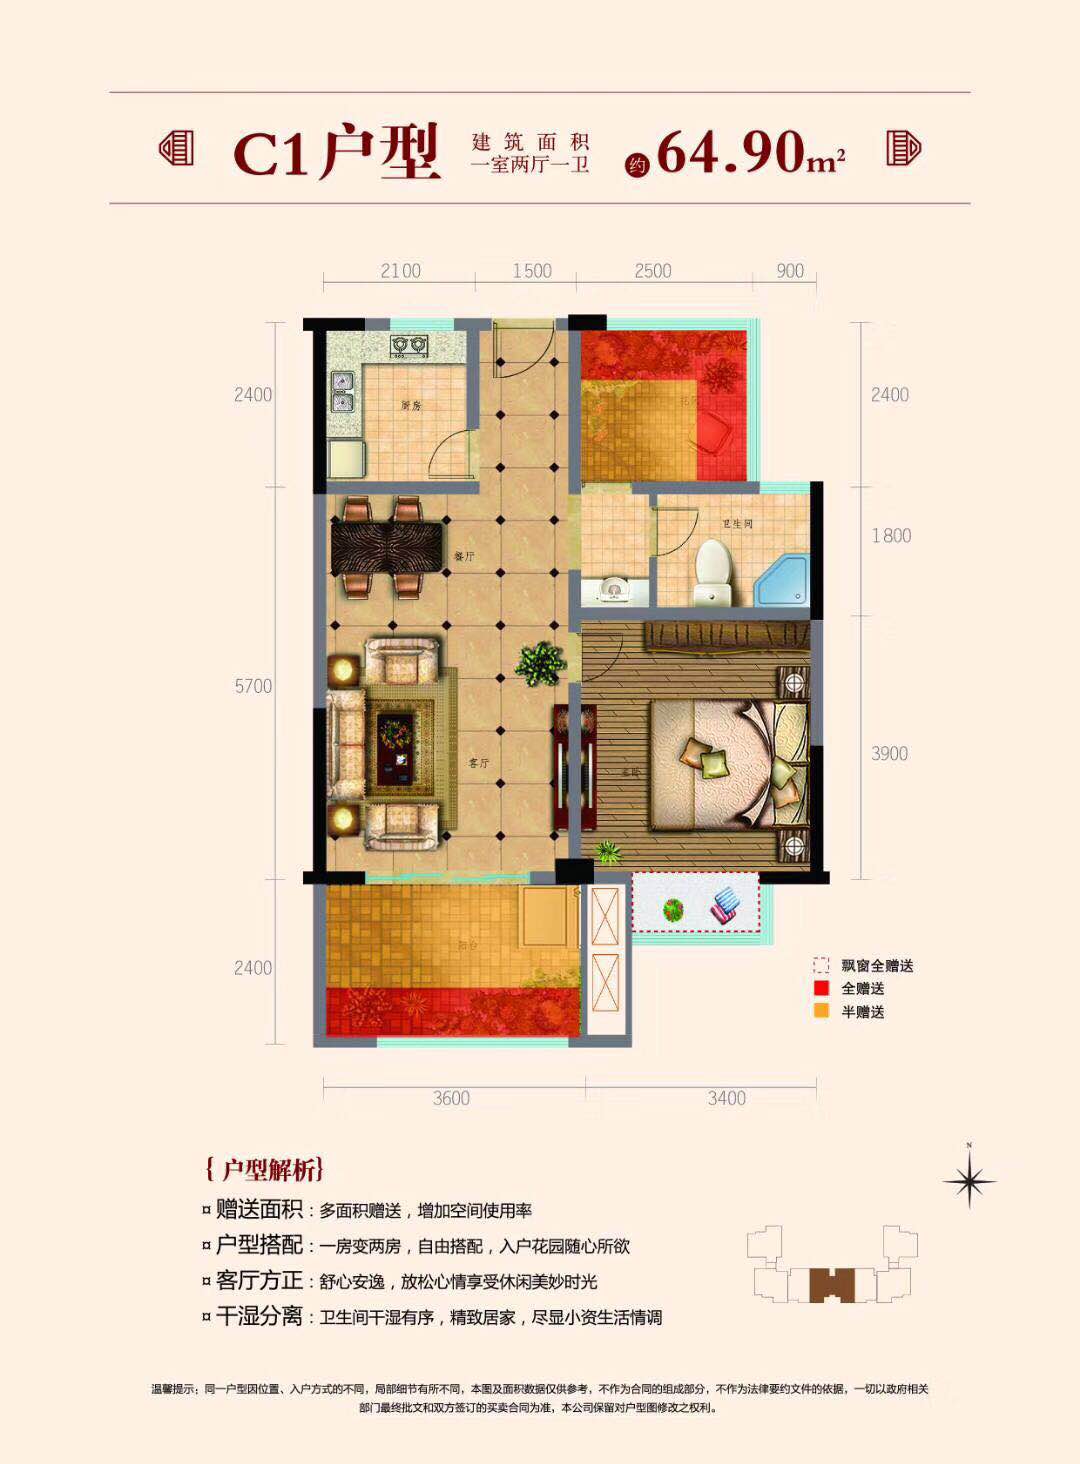 佳丰京艺湾推出6套两房至三房户型 首付9万/套